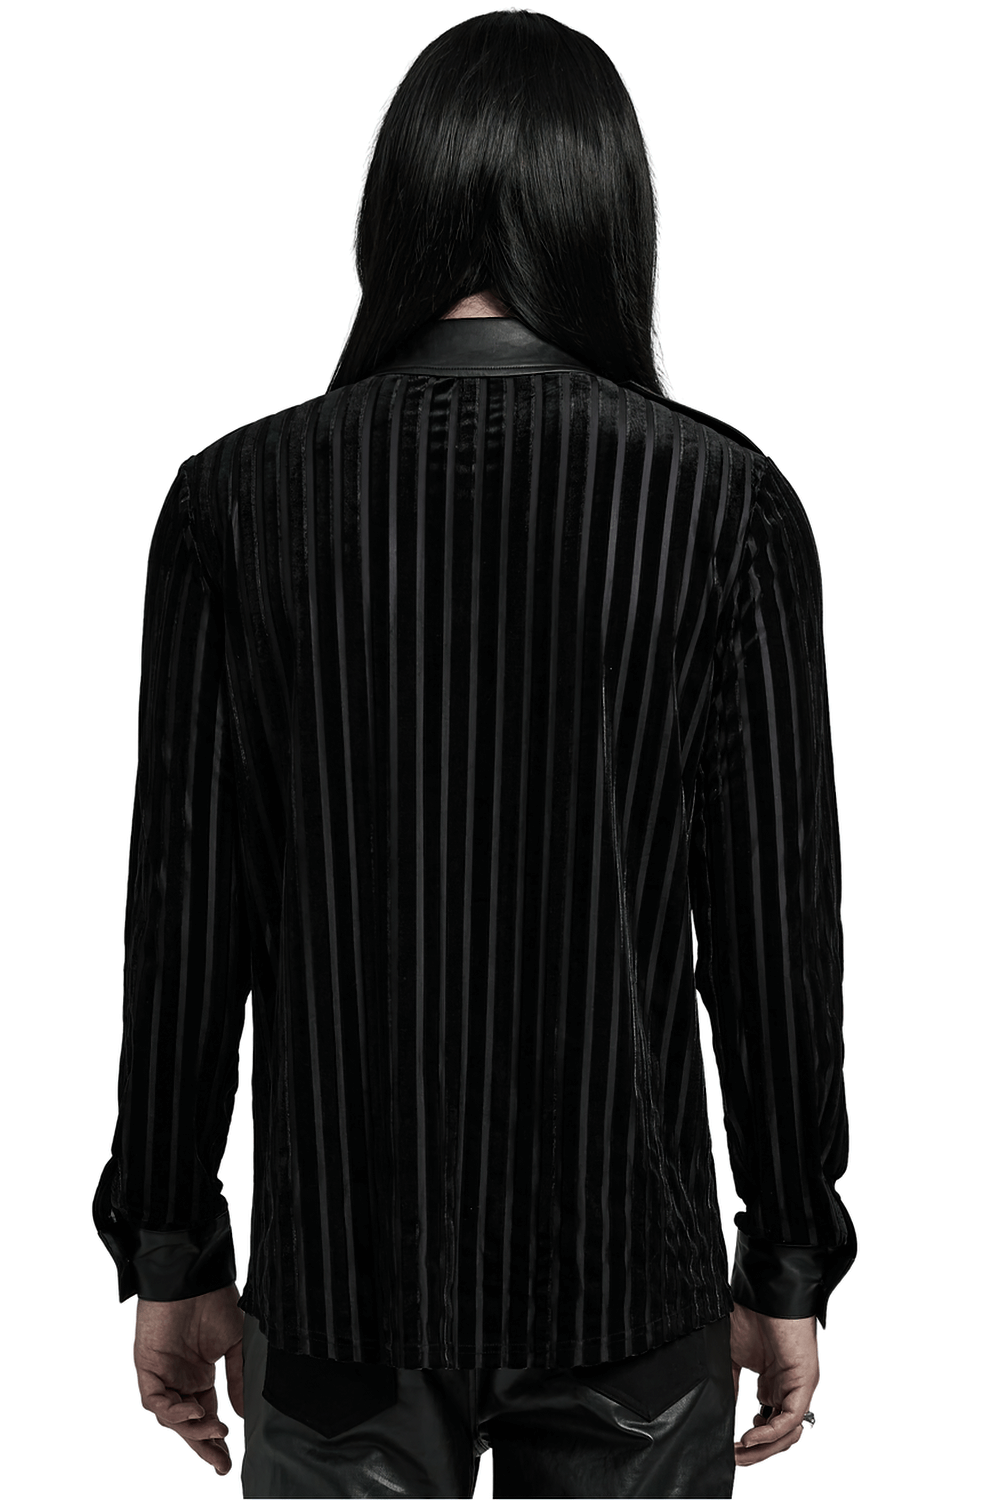 Chic Black Tactical Striped Velvet Men's Shirt